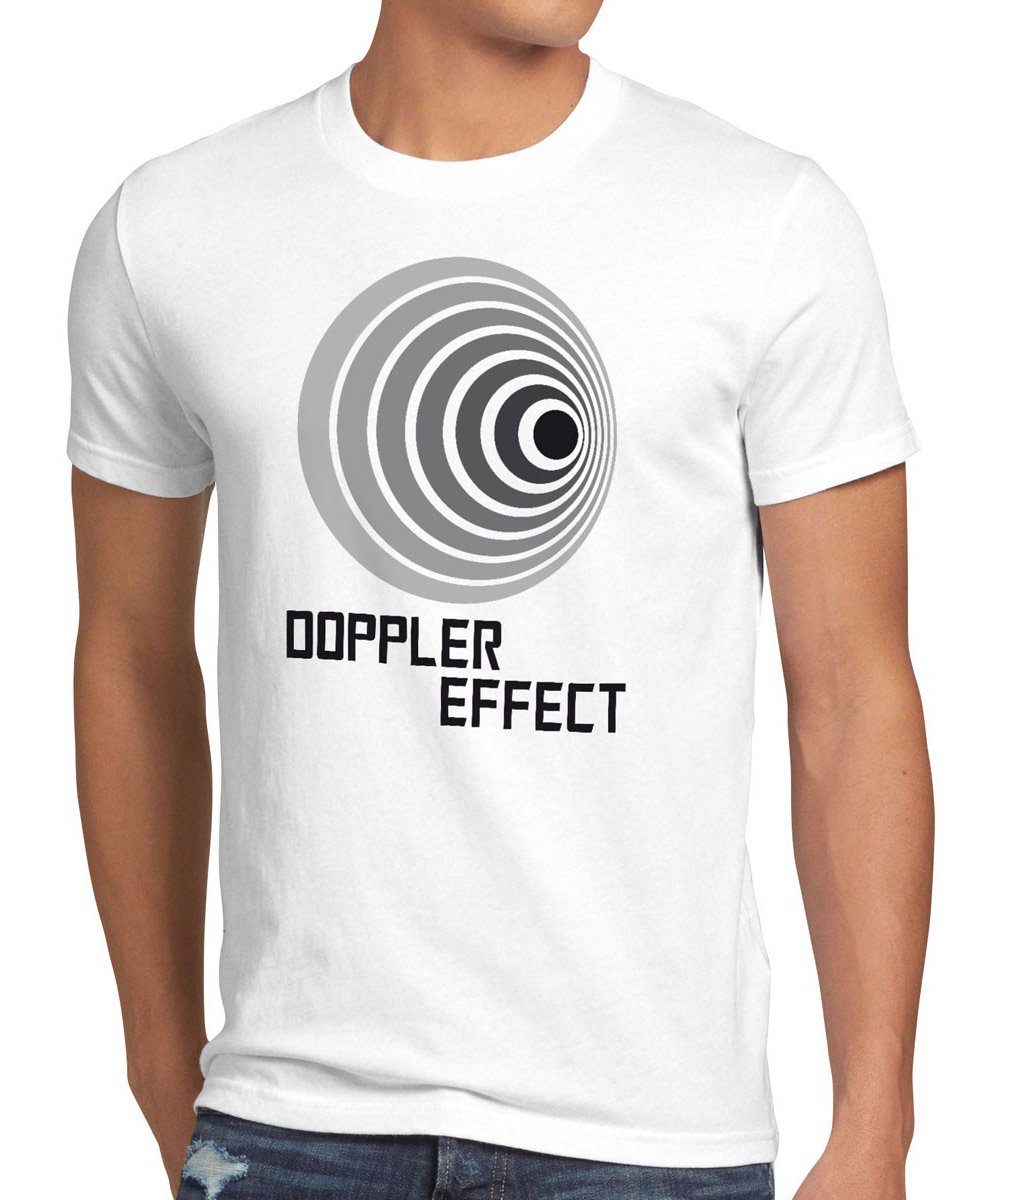 style3 Print-Shirt Herren Effekt Big Effect T-Shirt Theory tbbt Sheldon Doppler Cooper weiß Bang Schall